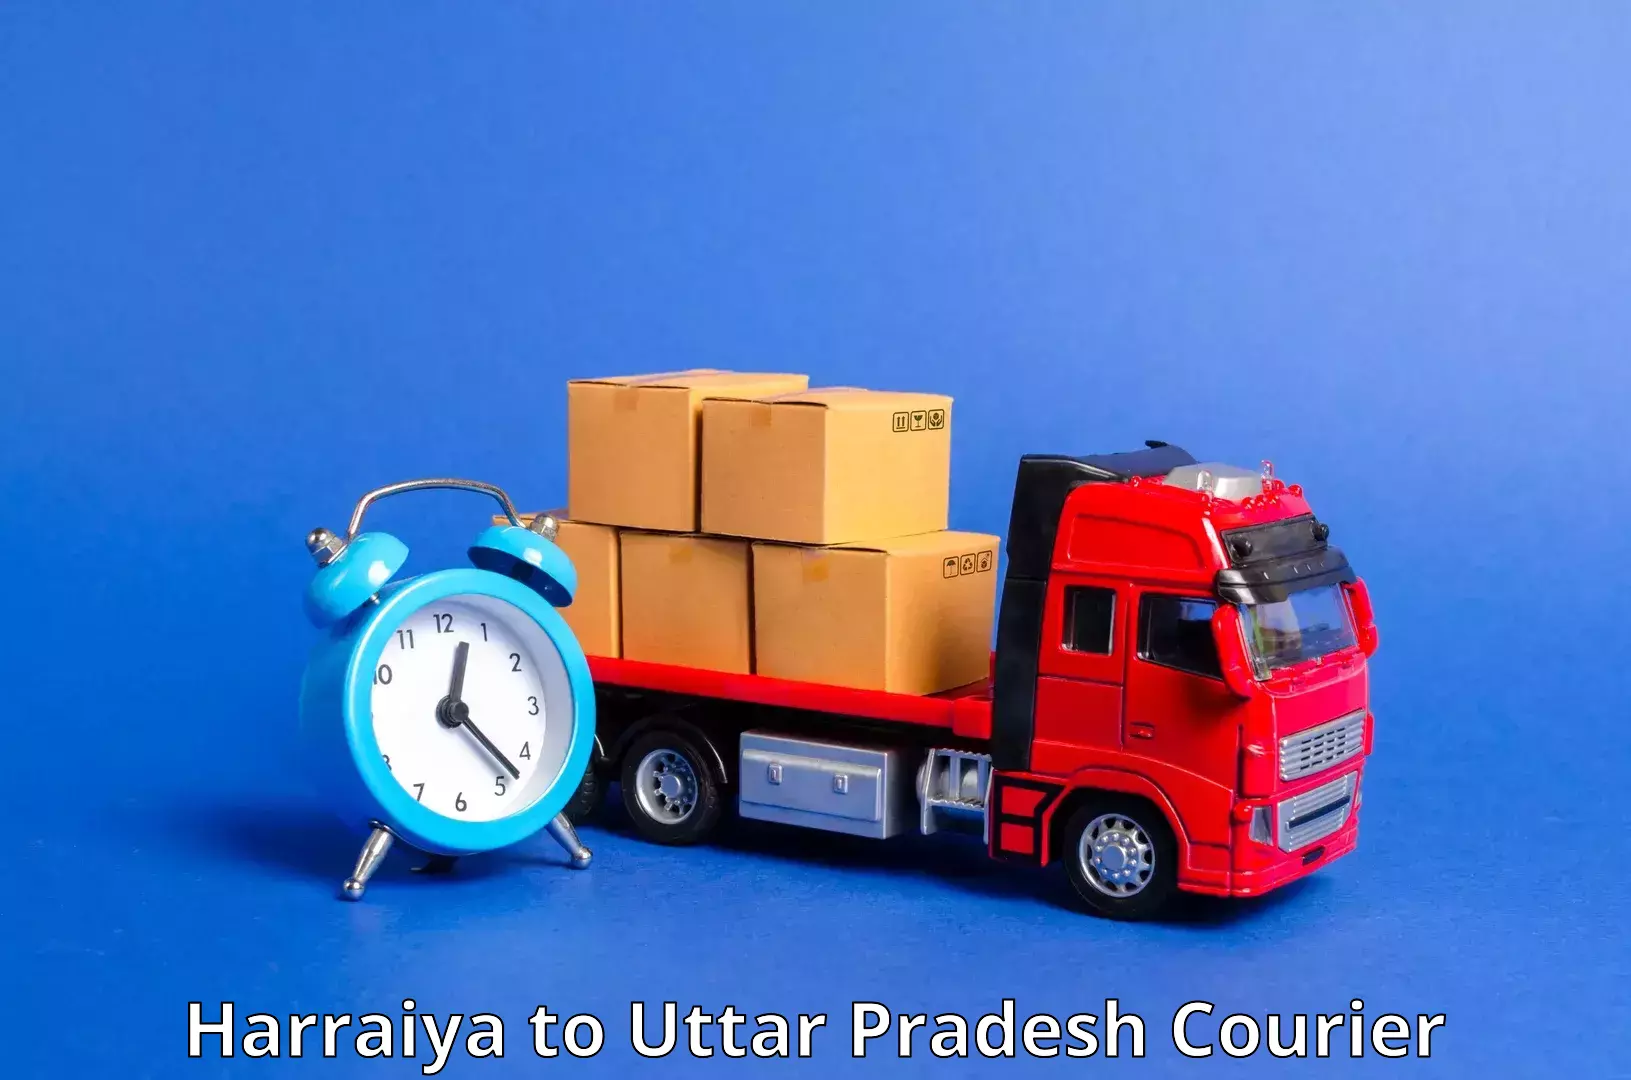 High-speed parcel service Harraiya to Khaga